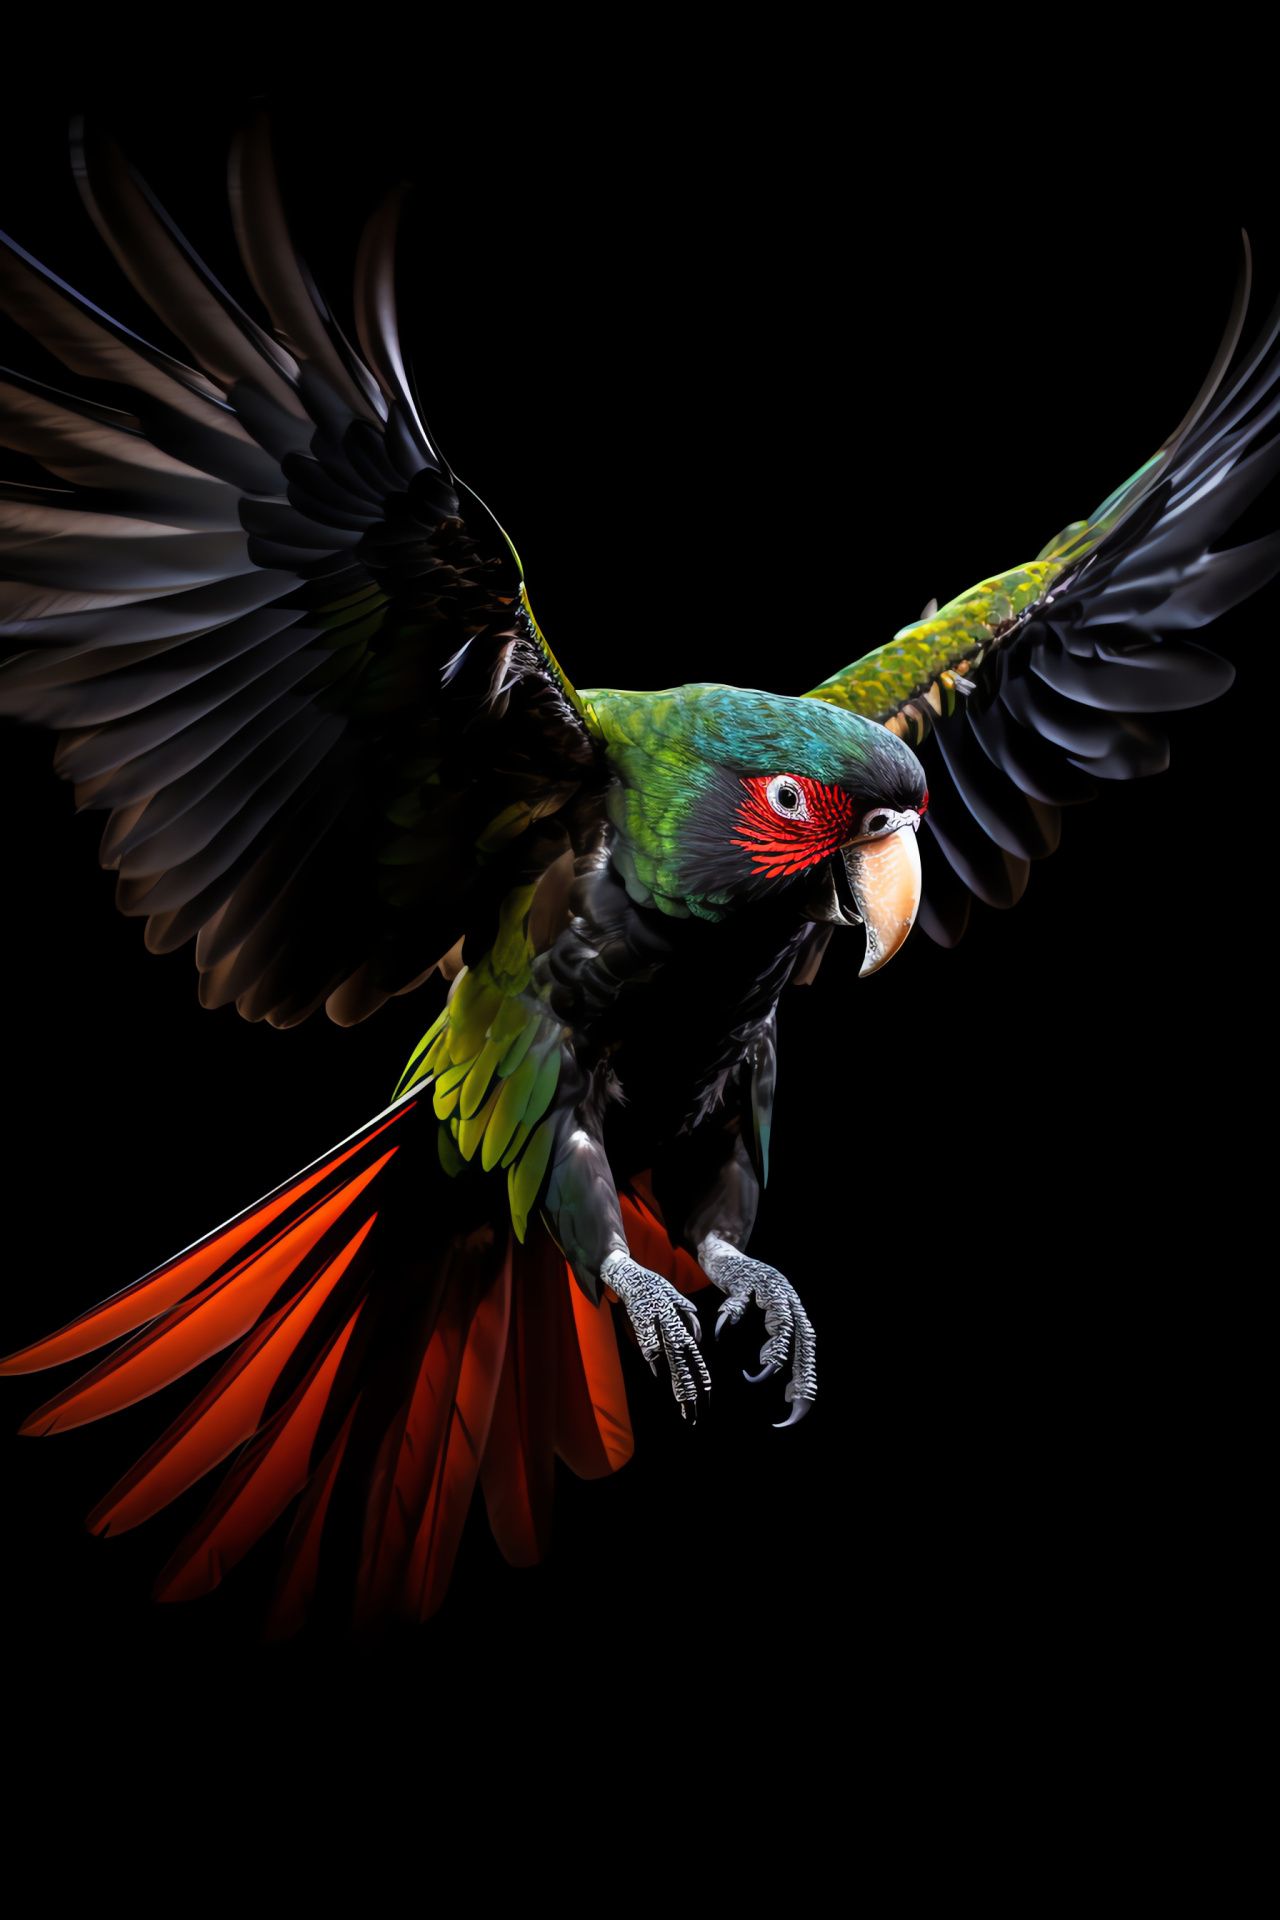 Parrot in flight, Avian radiant, Animal wingspan, Momentum swift, Backdrop obsidian, HD Phone Image